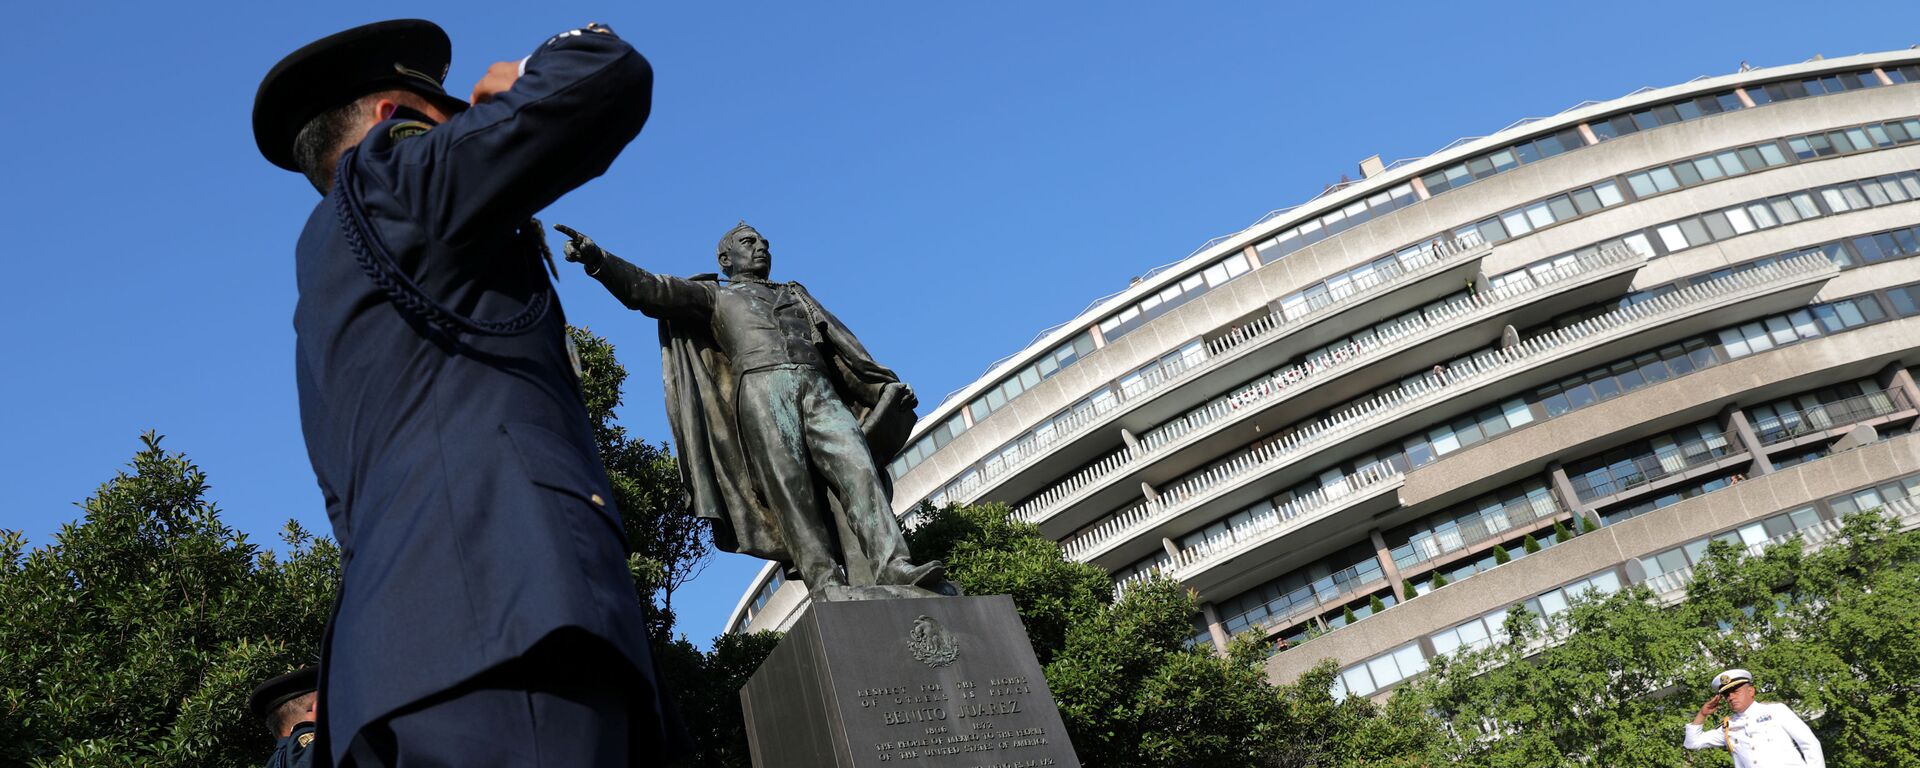 El estatua de Benito Juárez en Washington - Sputnik Mundo, 1920, 08.07.2020